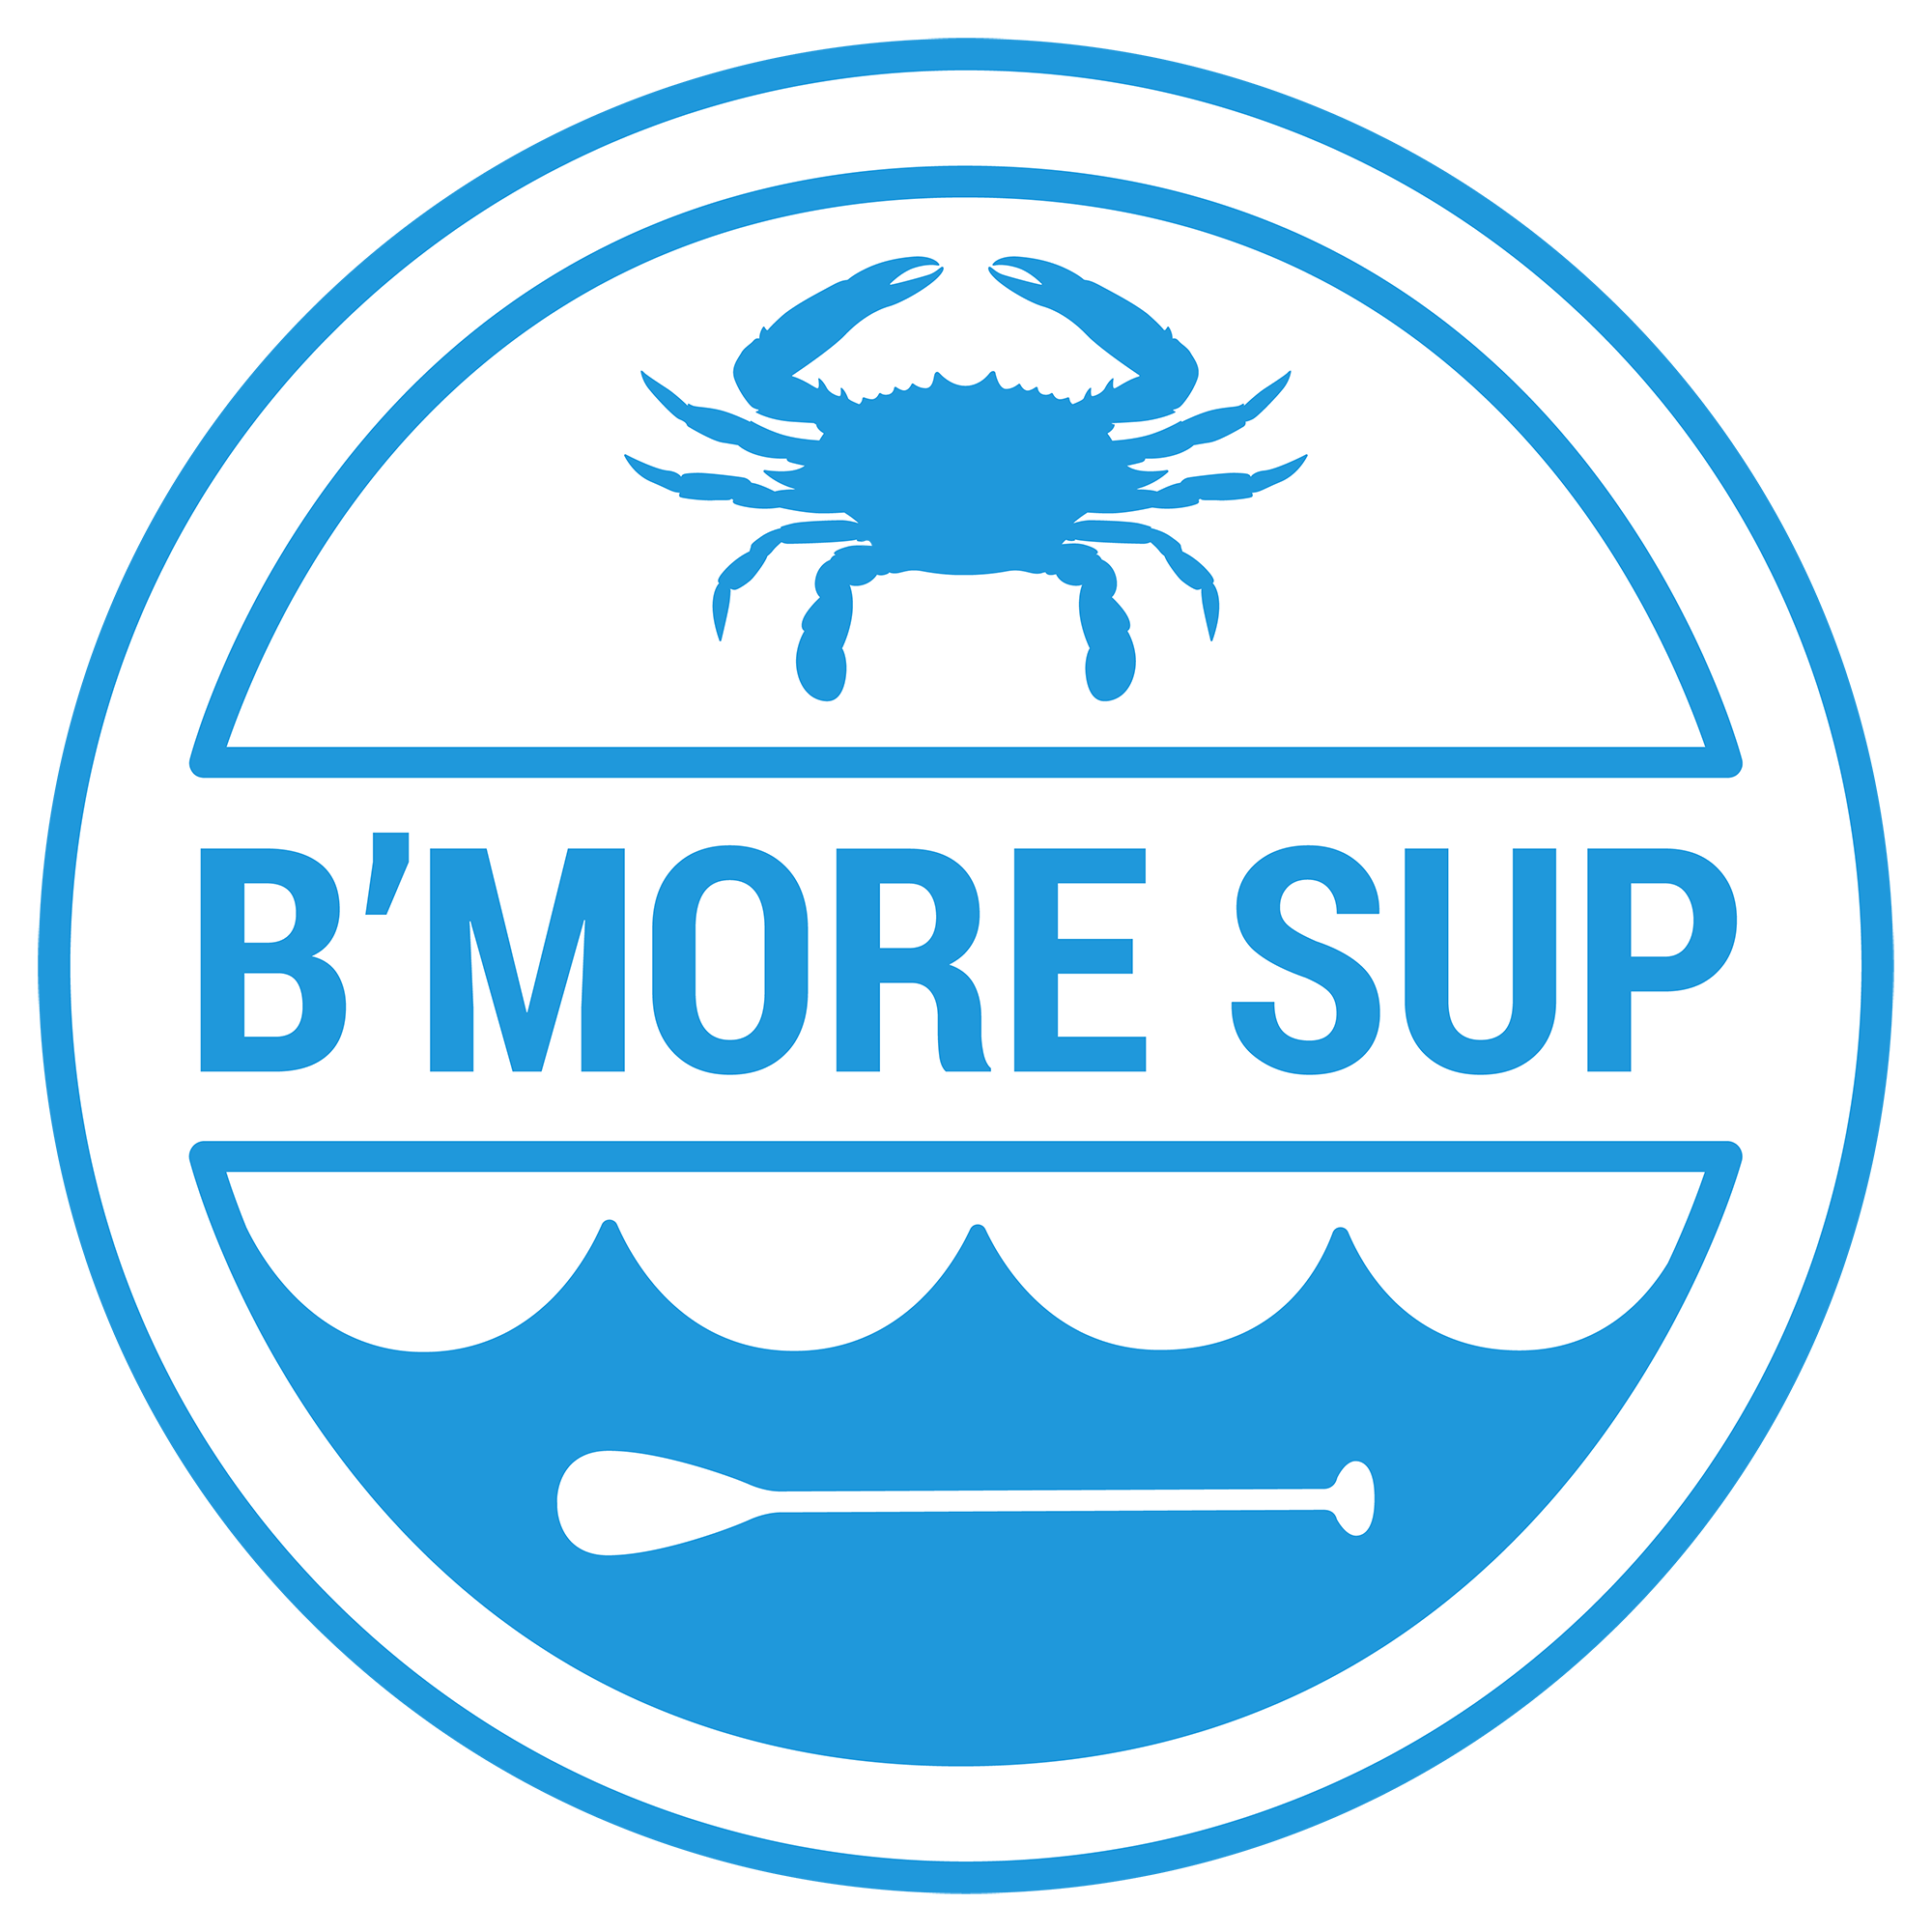 B’More SUP